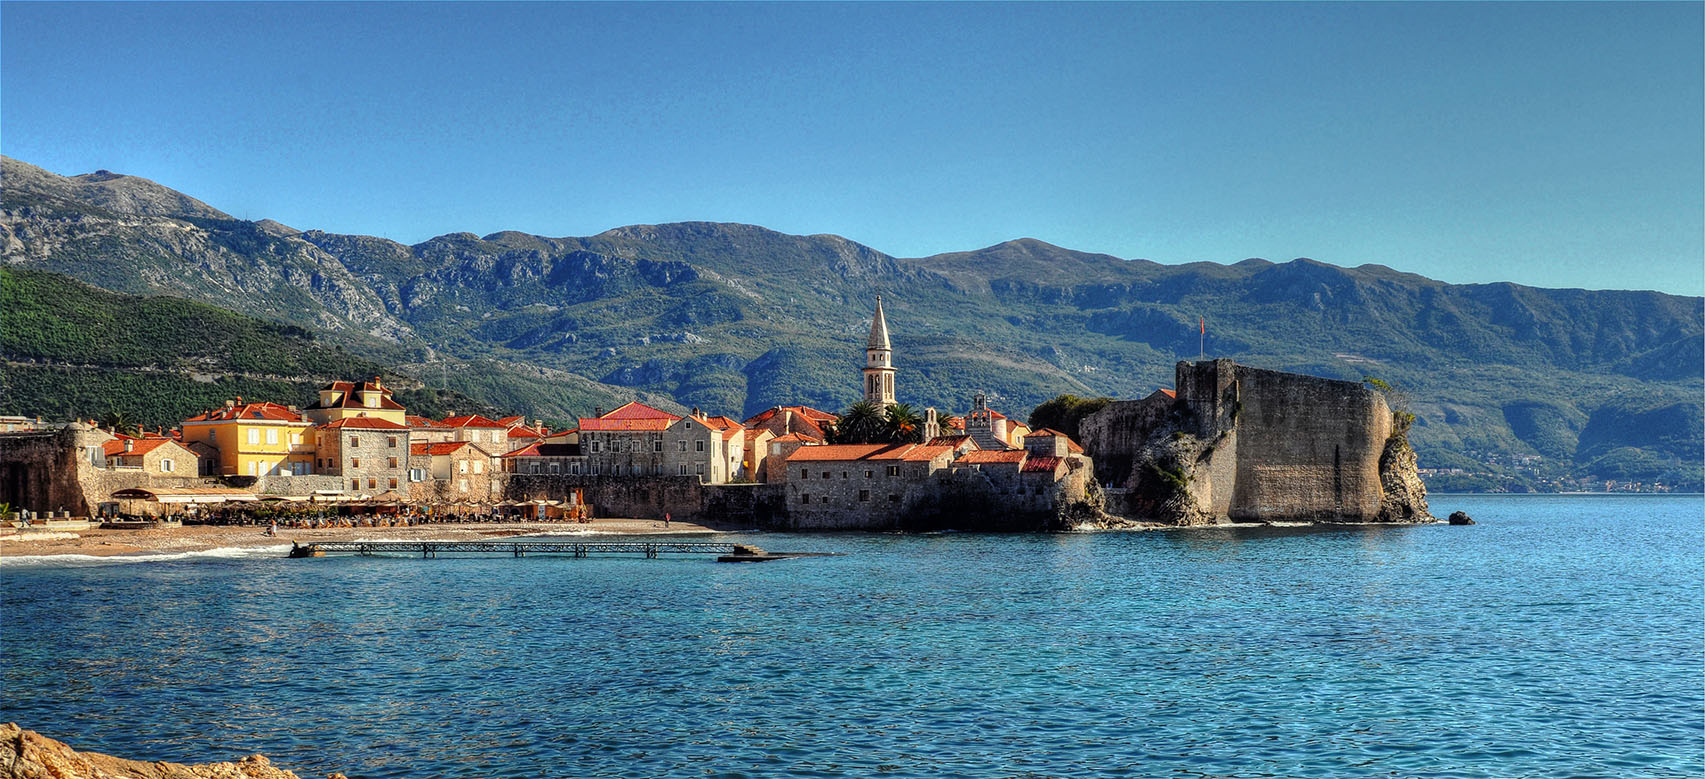 Budva, Montenegro